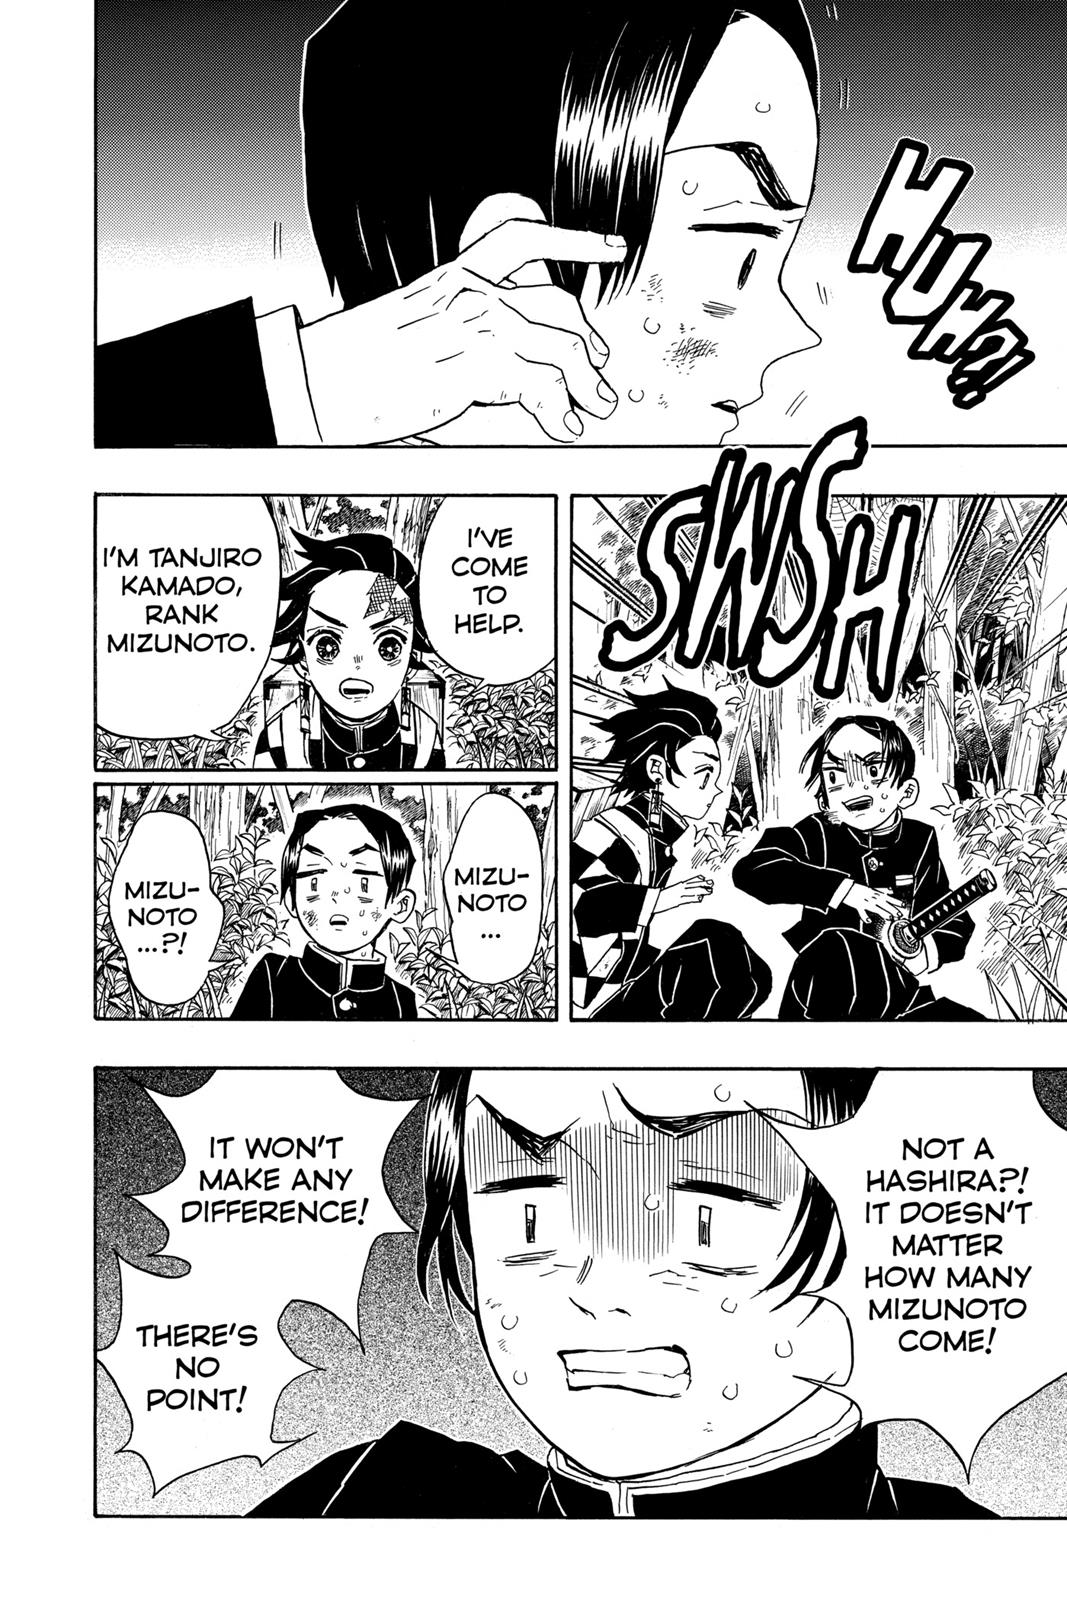 Demon Slayer Manga Manga Chapter - 28 - image 9